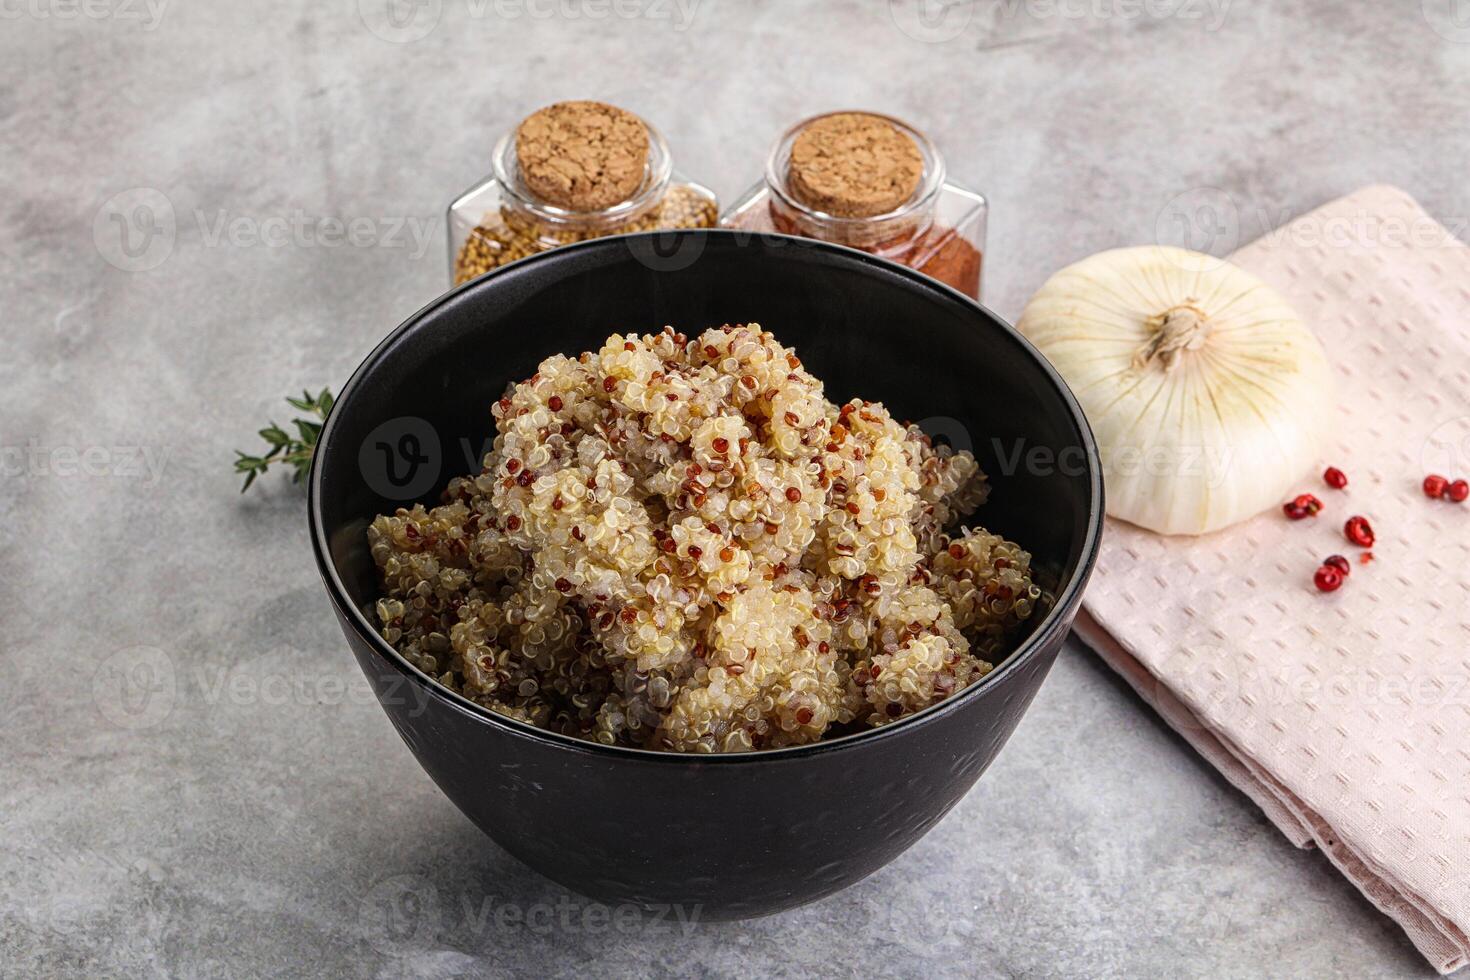 vegano cozinha - fervido Quinoa cereal foto